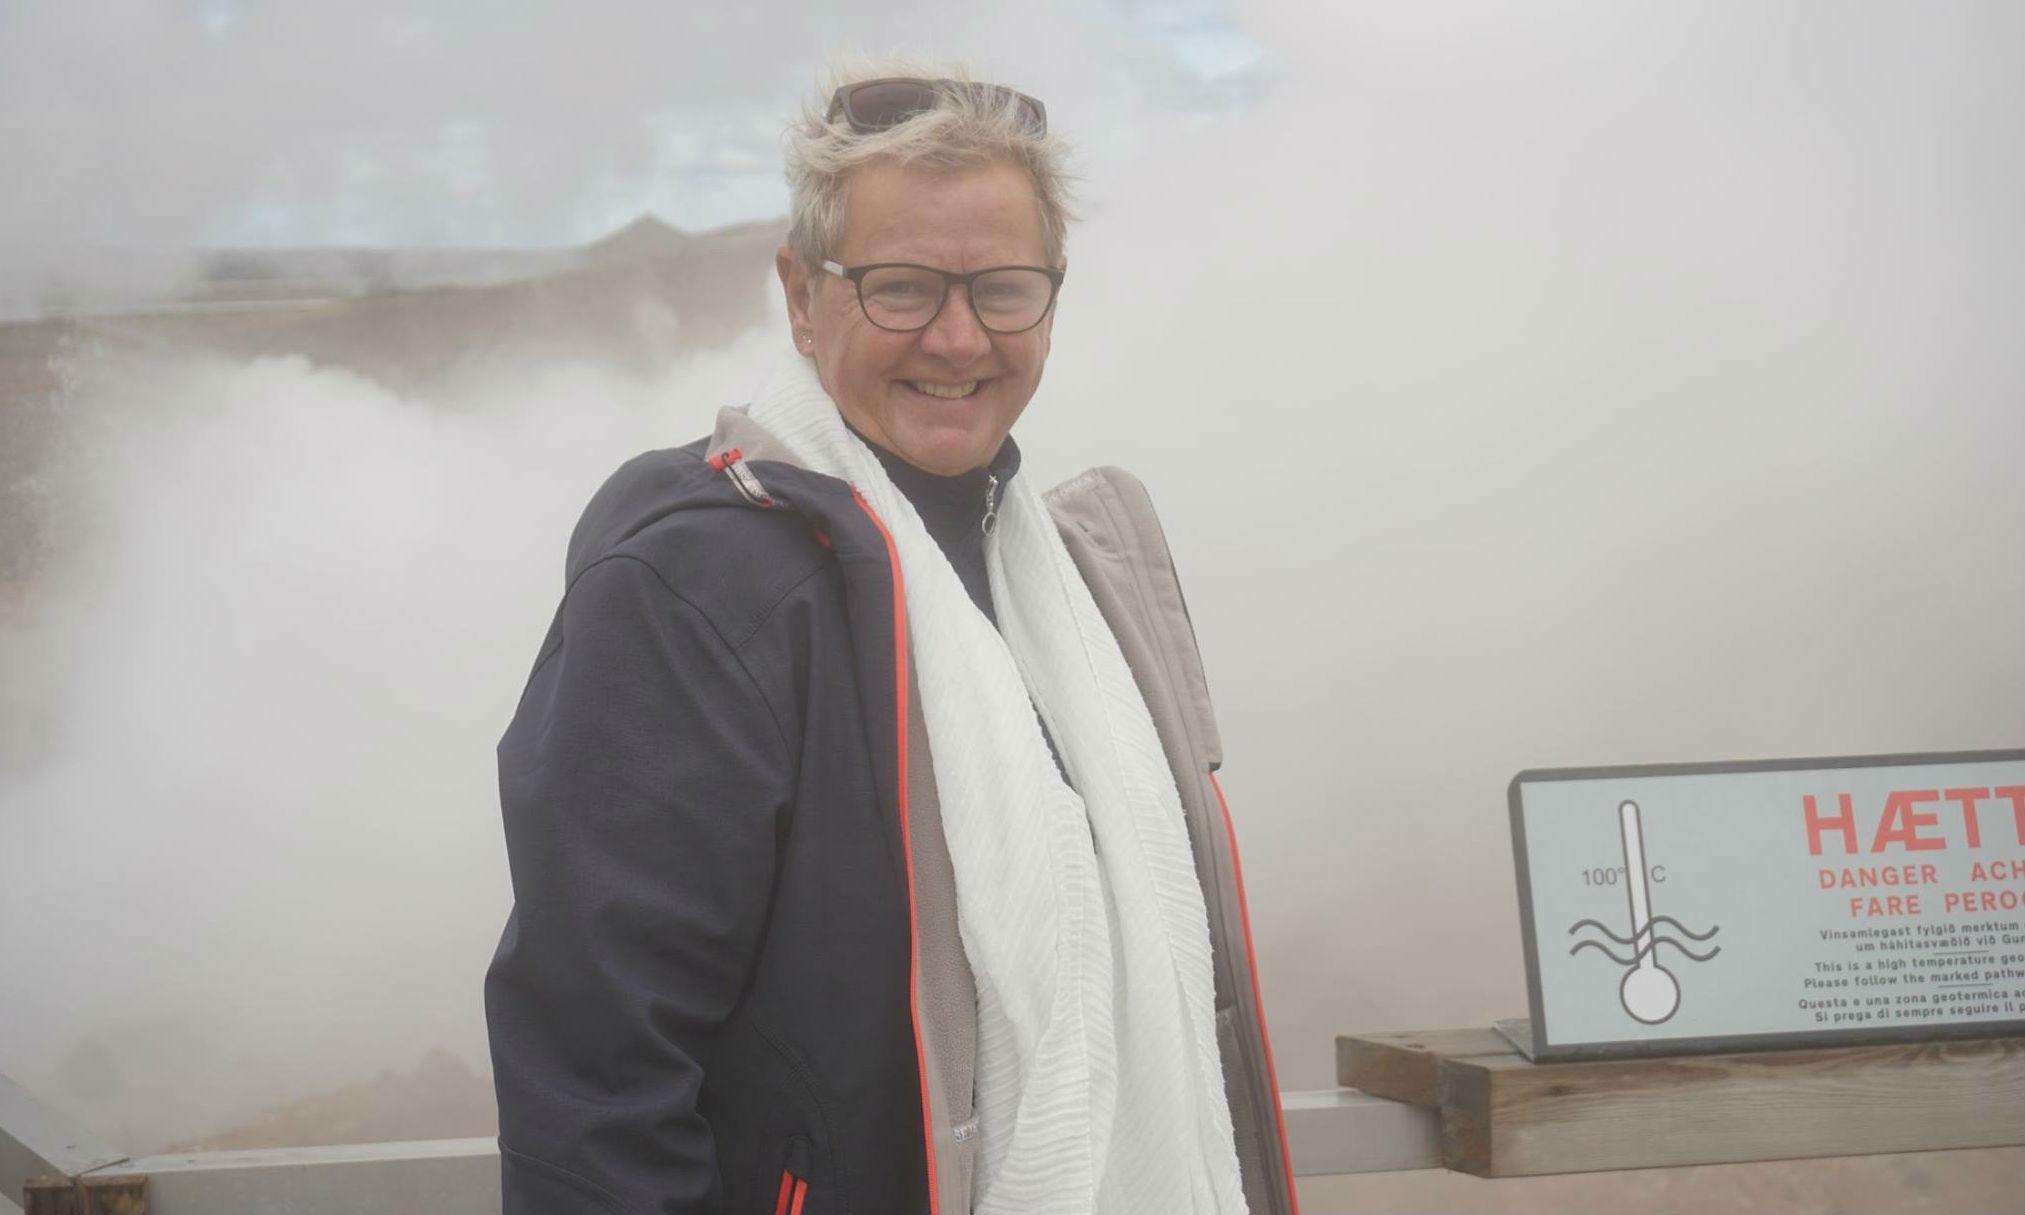  “Jeg har rejst ufattelig meget i mit liv, men jeg har aldrig boet andre steder end Thy. Thy er min base, fortæller borgmester Ulla Vestergaard. Her fotograferet på Island i forbindelse med venskabsbysamarbejdet med Molfellsbær.

